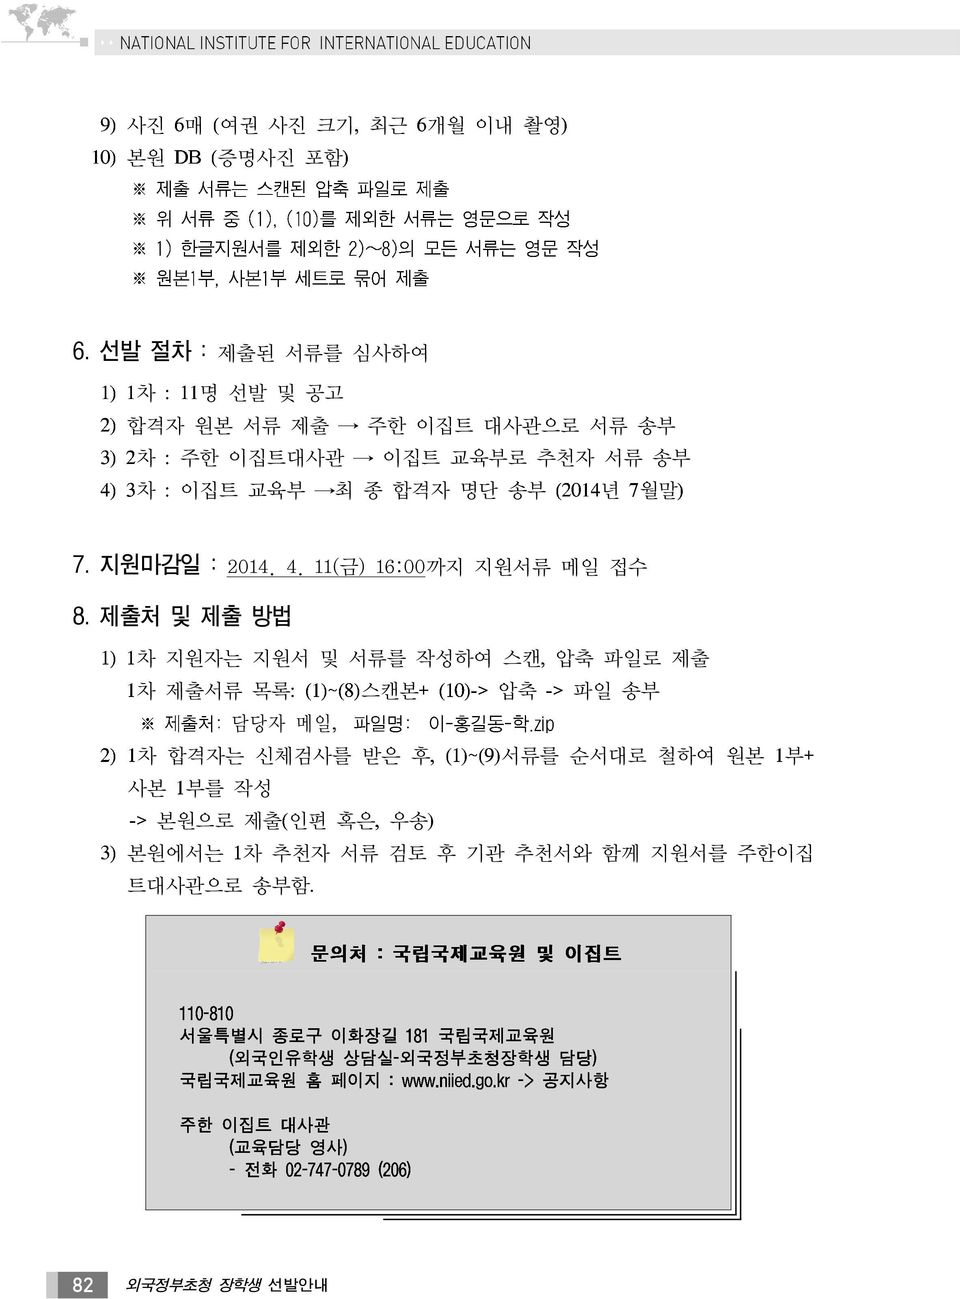 최 종 합격자 명단 송부 년 월말 7. 지원마감일 : 2014. 4. 11( 금) 16:00까지 지원서류 메일 접수 8.